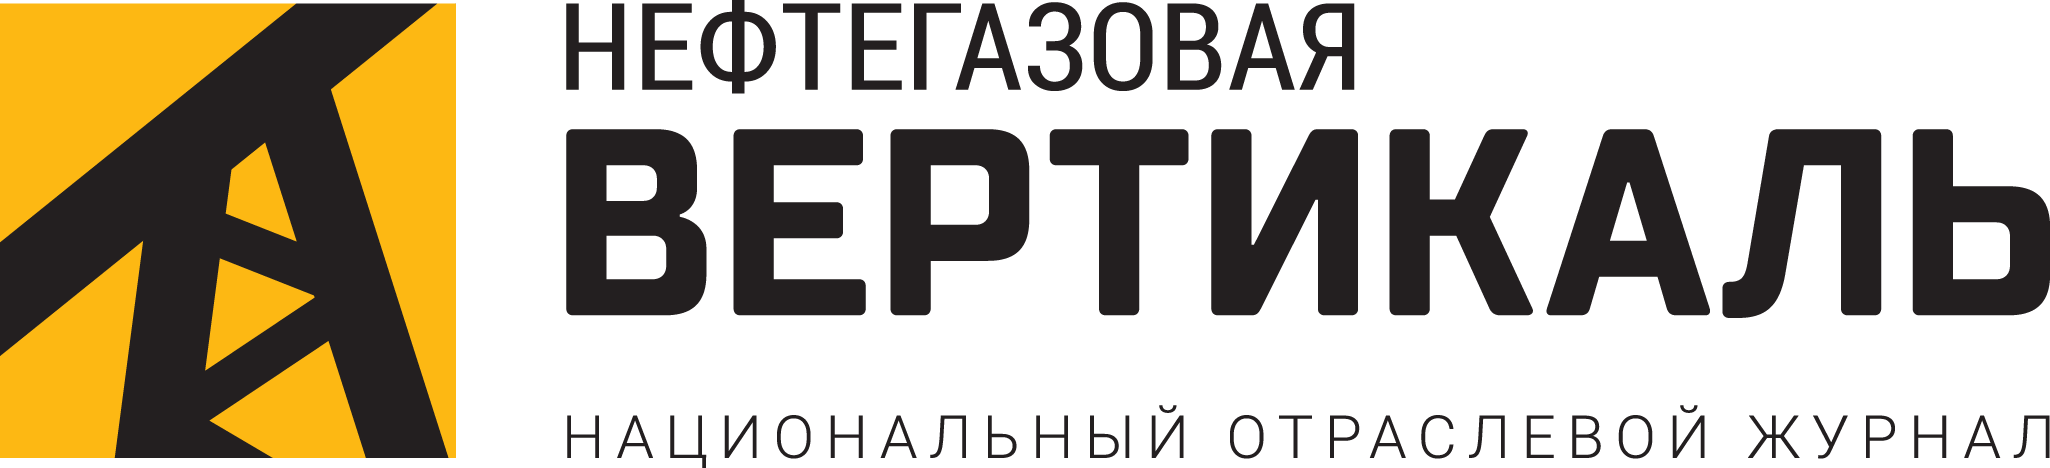 НГВ лого (2)